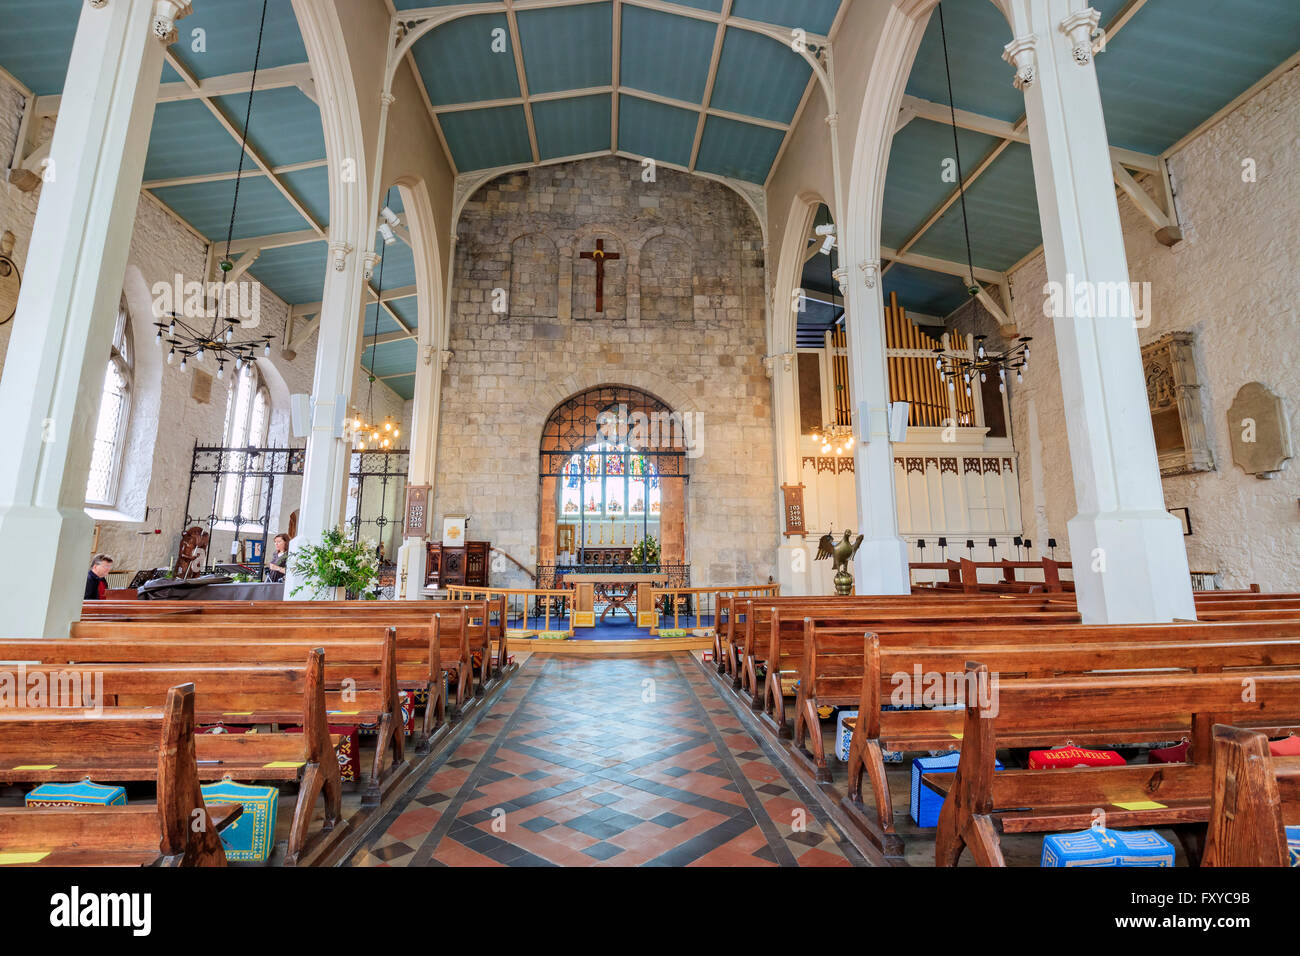 Southampton, APR 11: The historical Saint Michael's Church on APR 11, 2016 at Southampton, UK Stock Photo